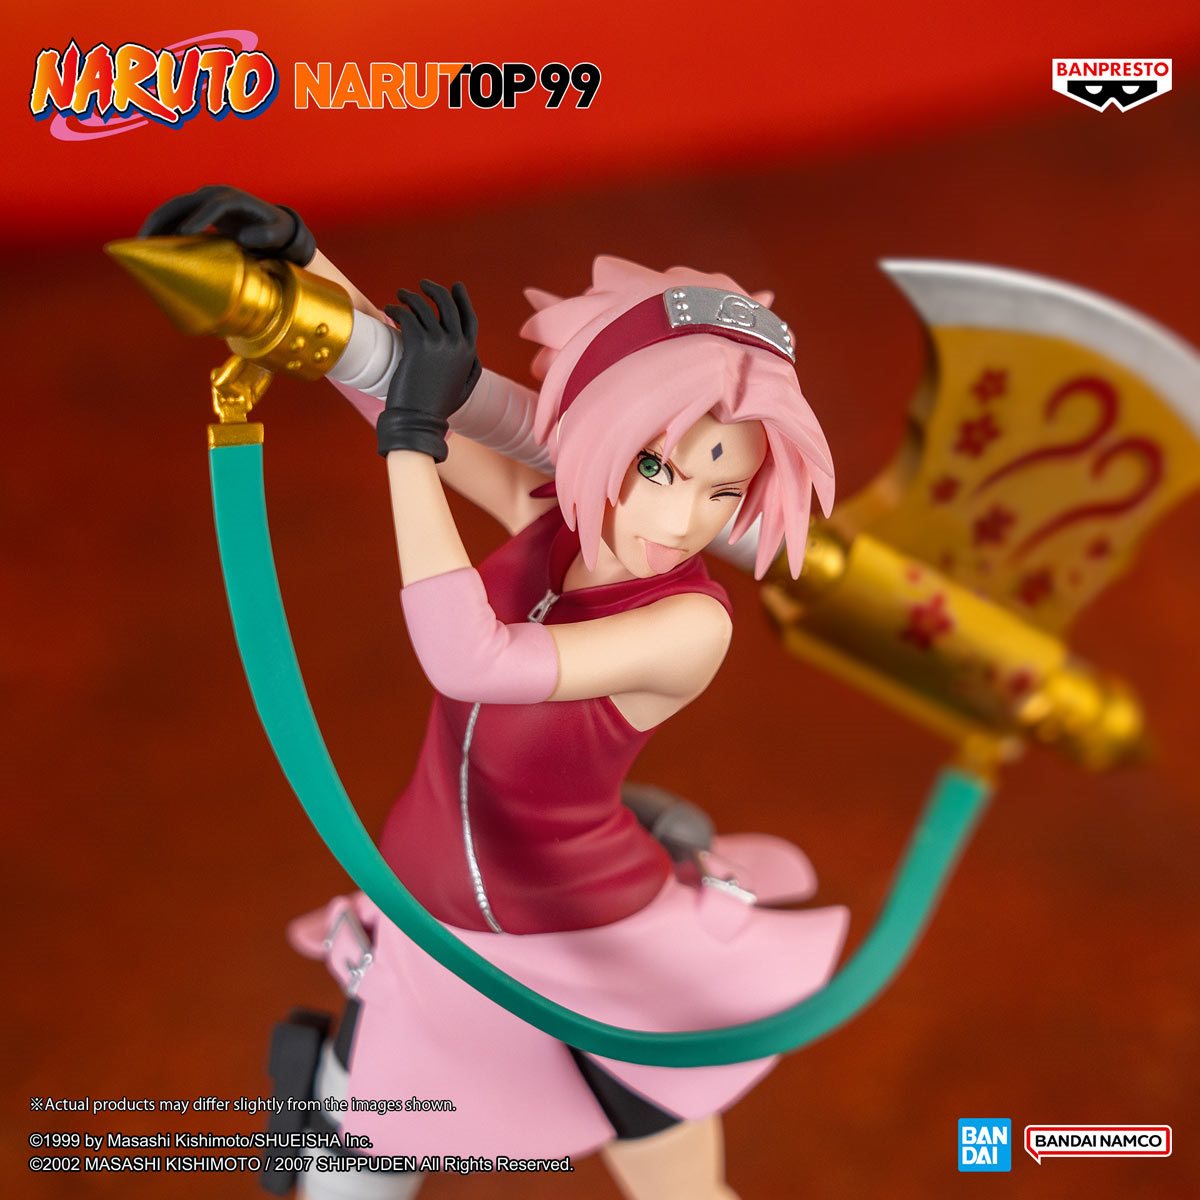 Sakura Haruno (SFC) - Figurine Manga - Naruto